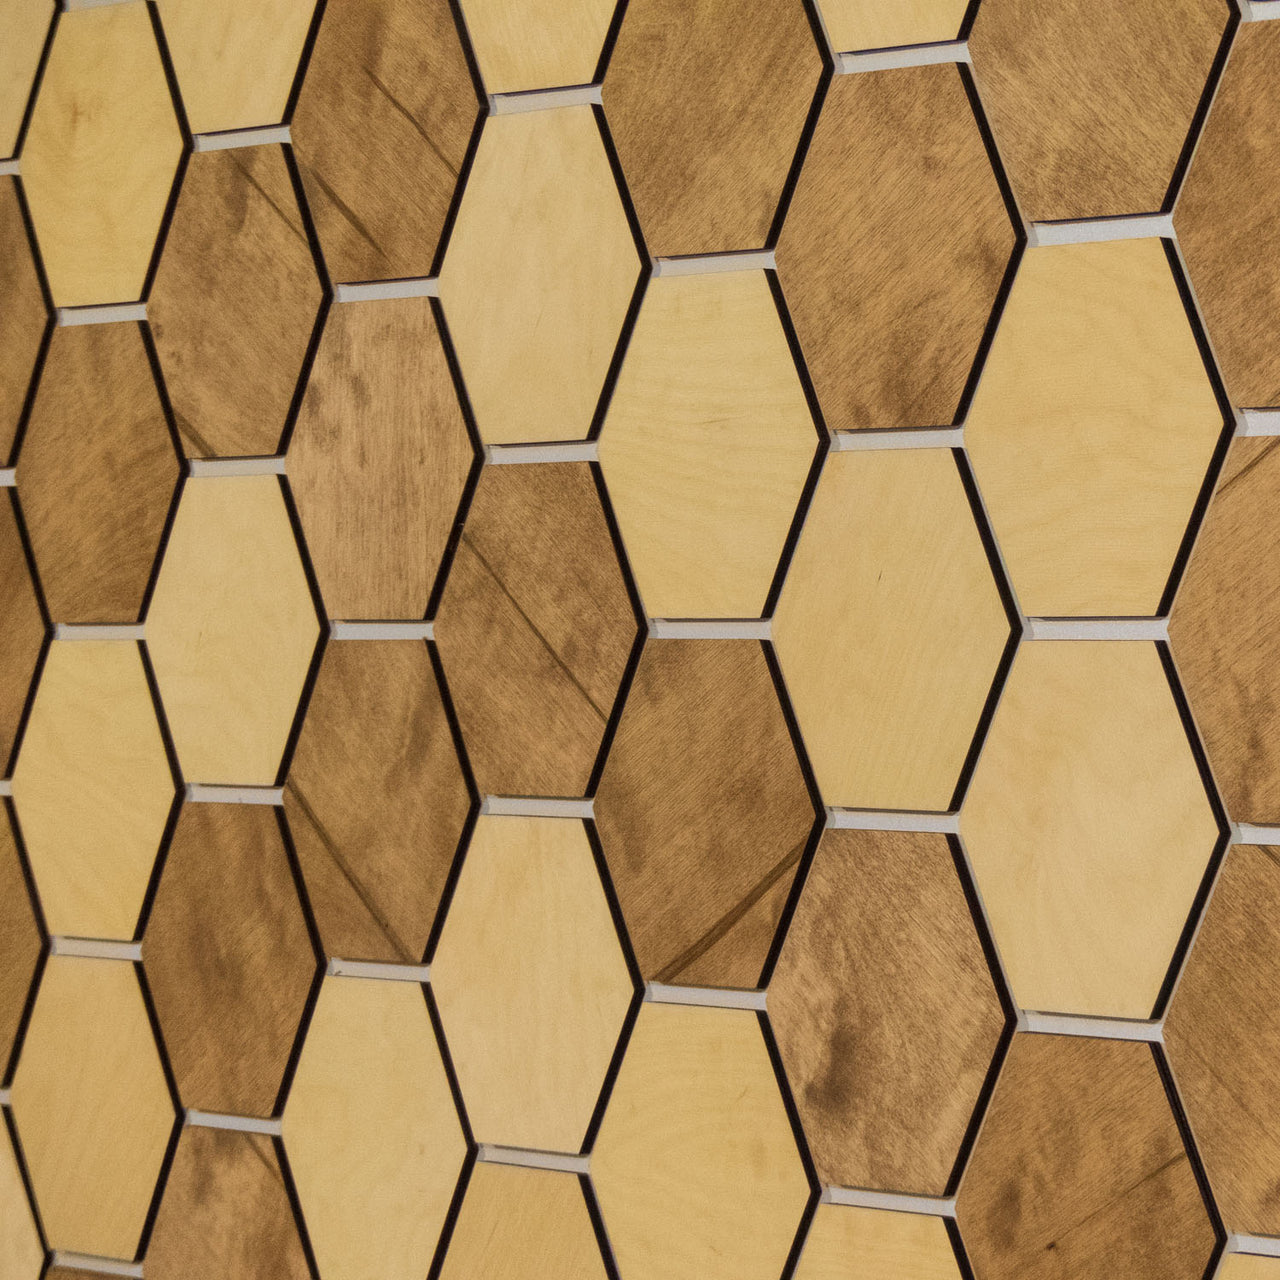 Hexagonal Wooden Wall Panels [32pcs] Birch Medium/Dark